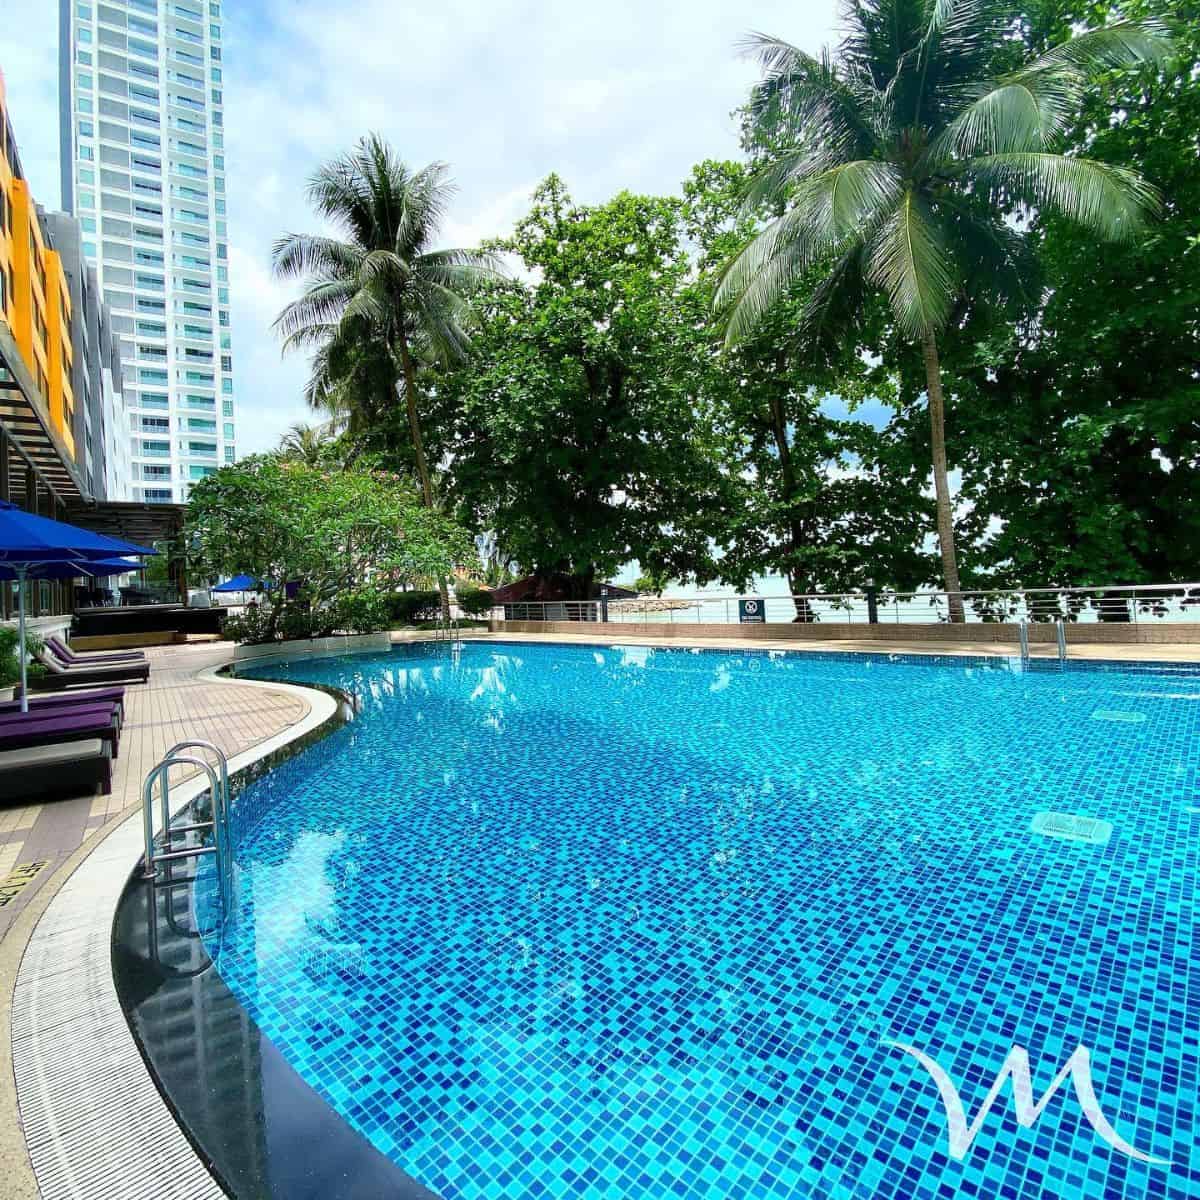 Pool at Mercure Hotel penang